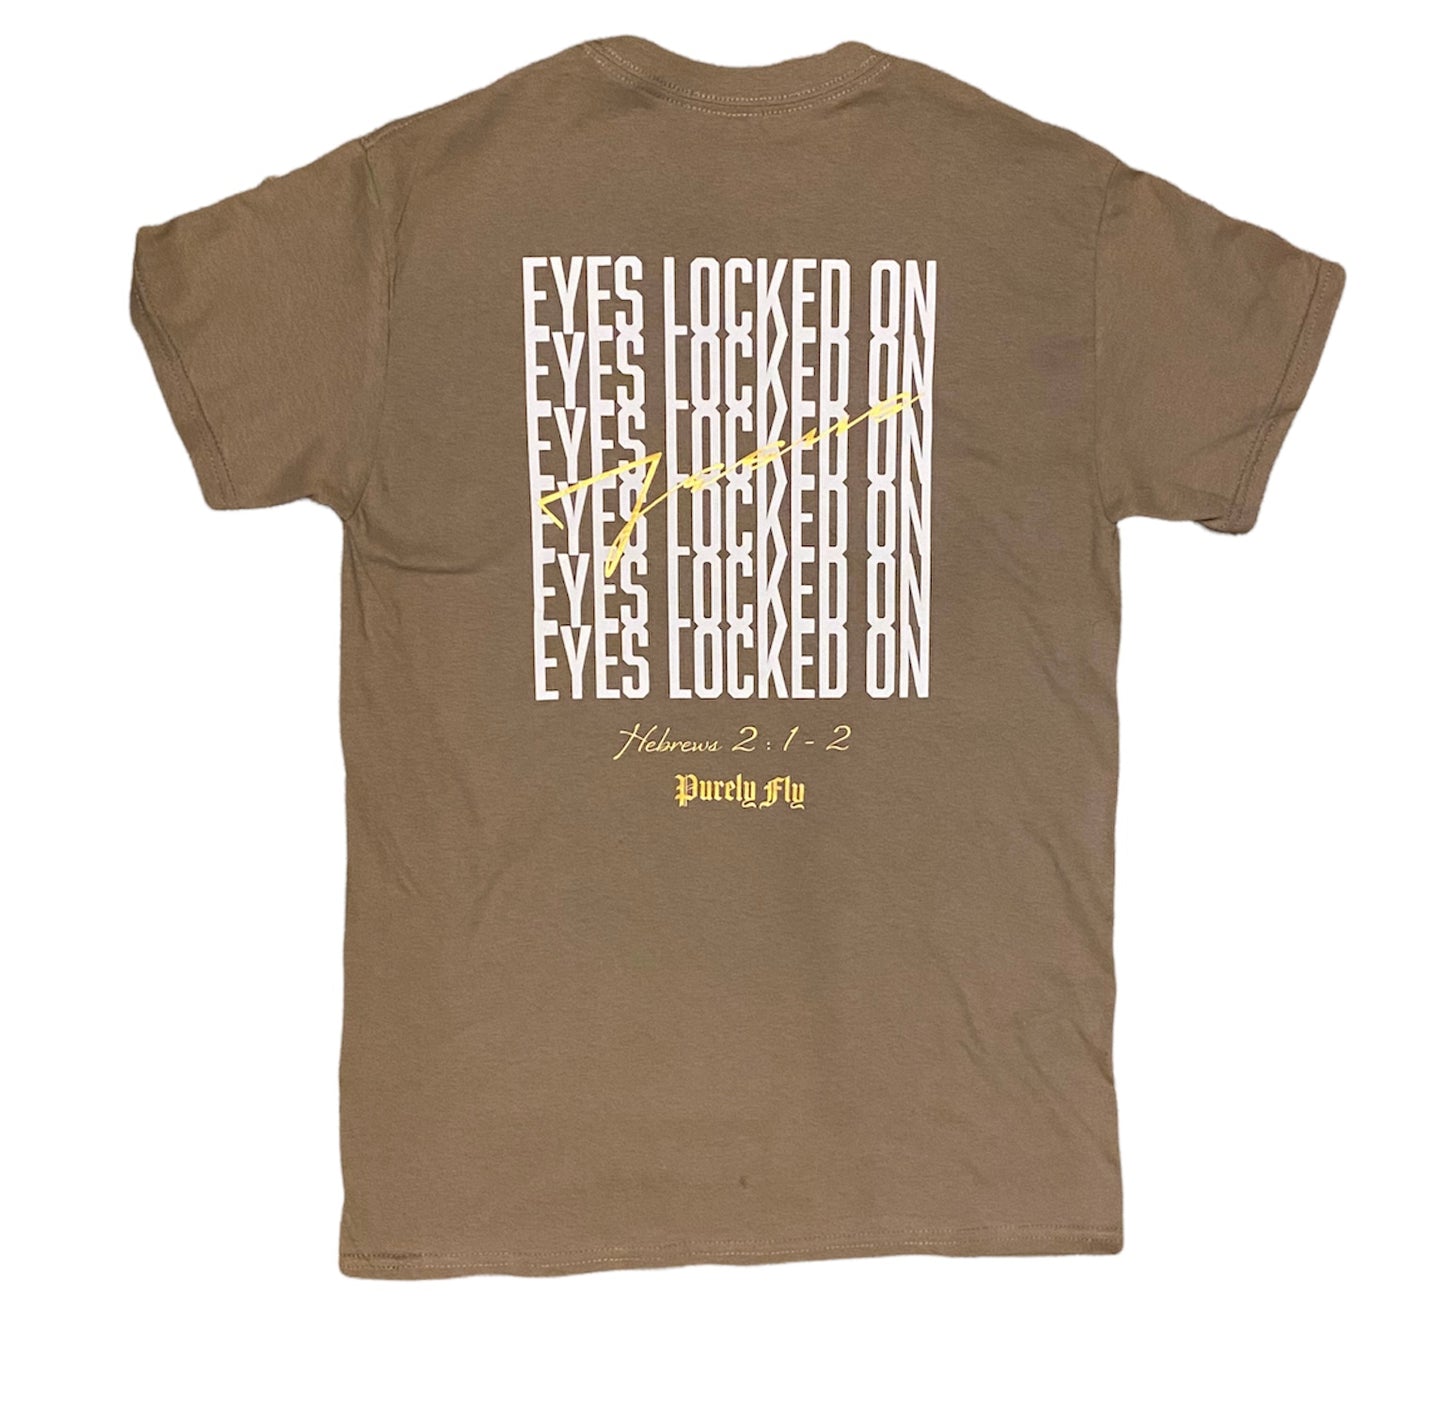 Eyes locked - Unisex (front & back designed)